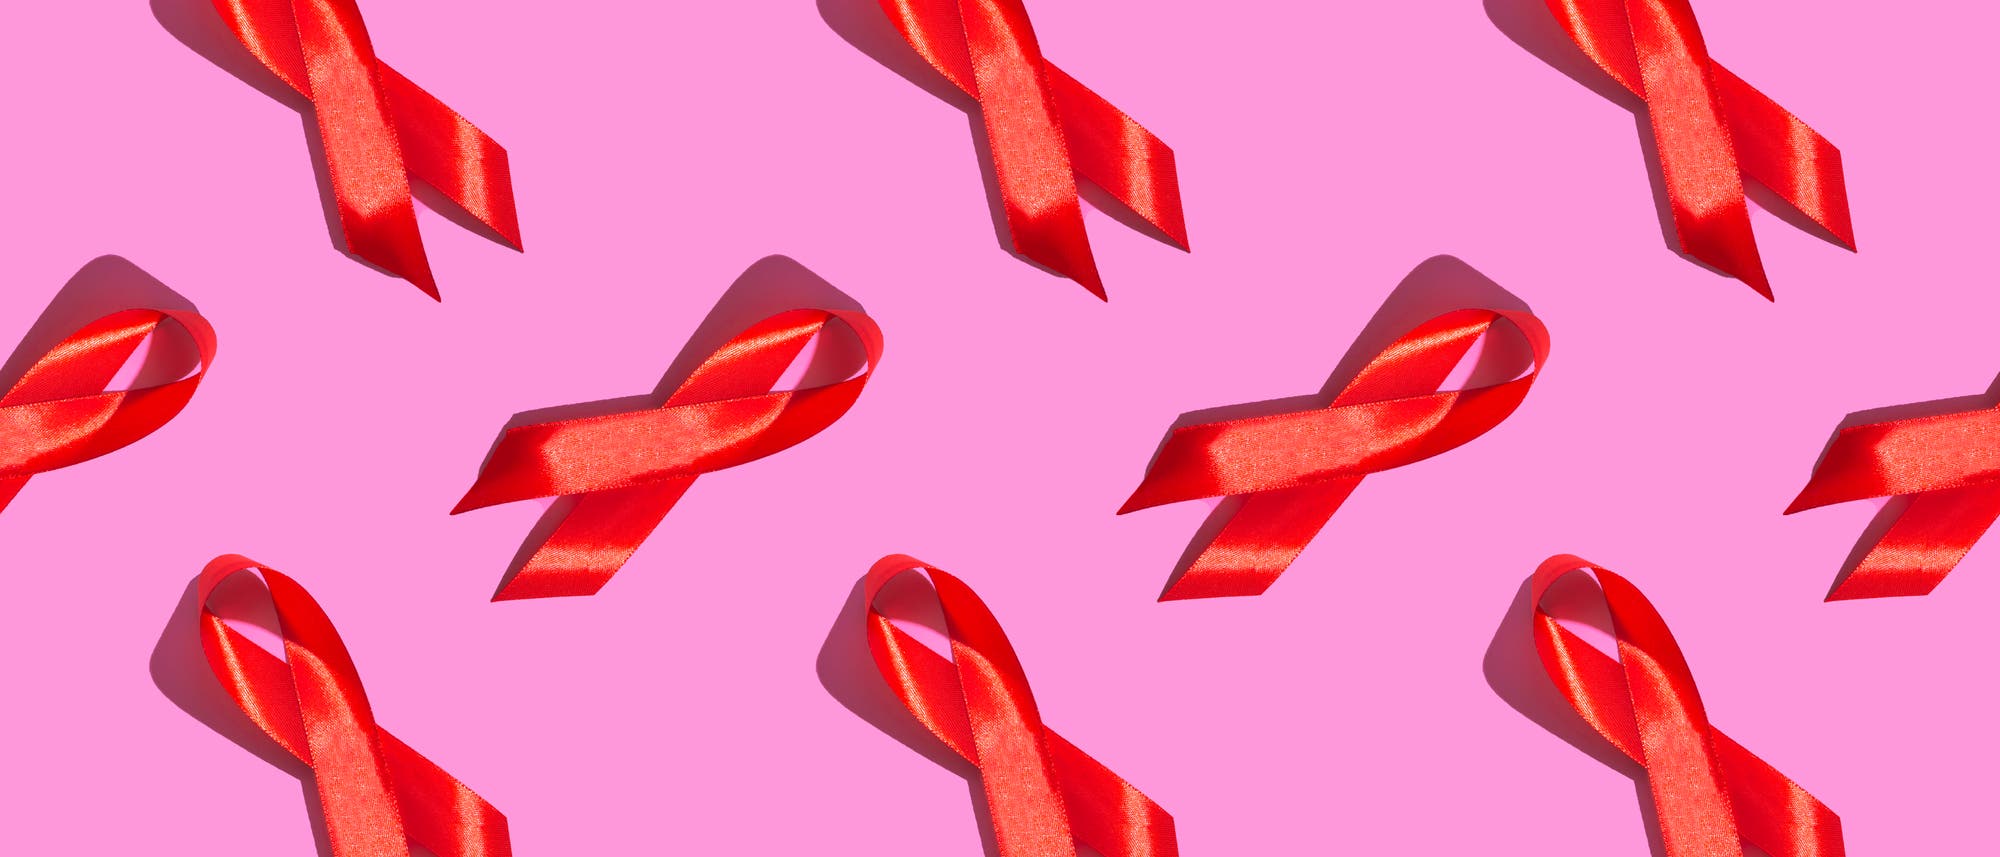 Die rote Schleife ist ein Symbol der Solidarität mit HIV-Infizierten und Aids-Kranken.